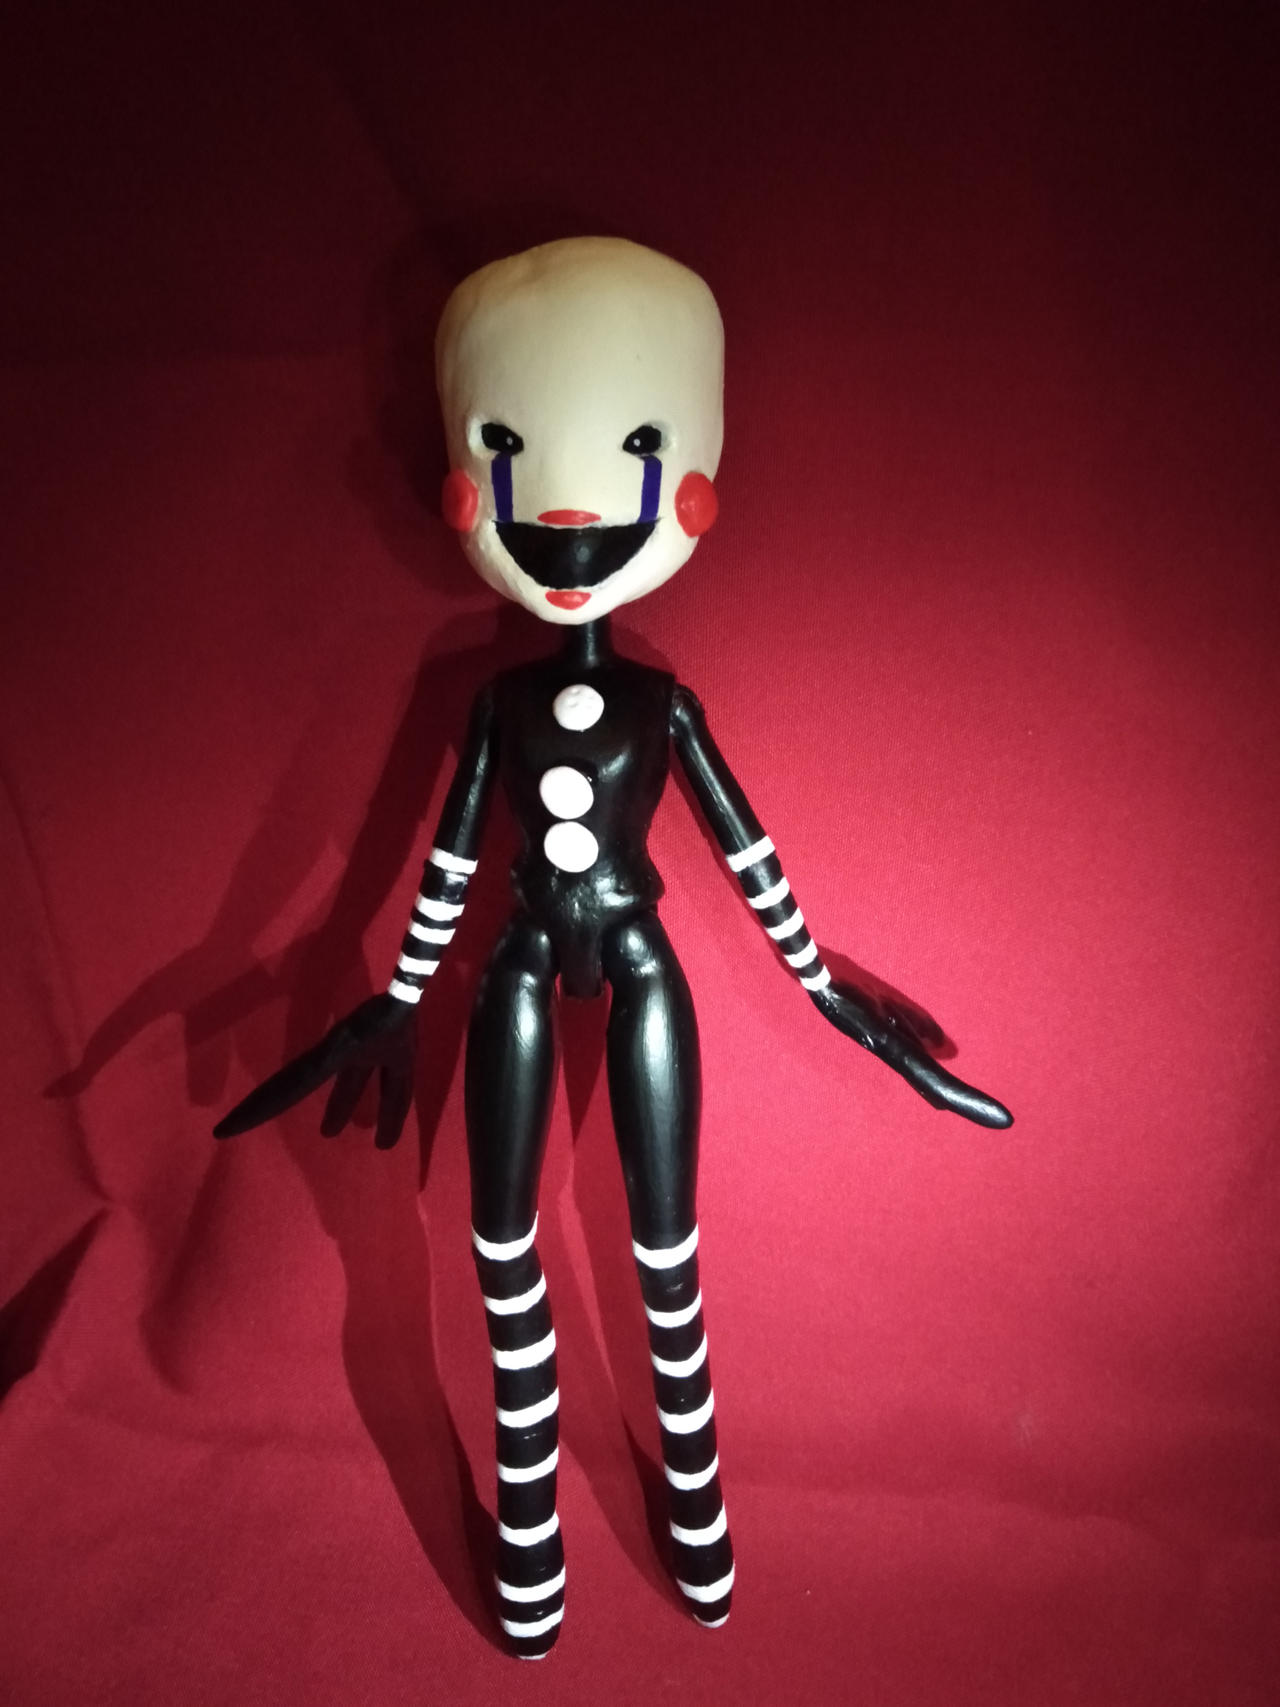 The Puppet (FNAF OOAK) by aotearoa-geek13 on DeviantArt